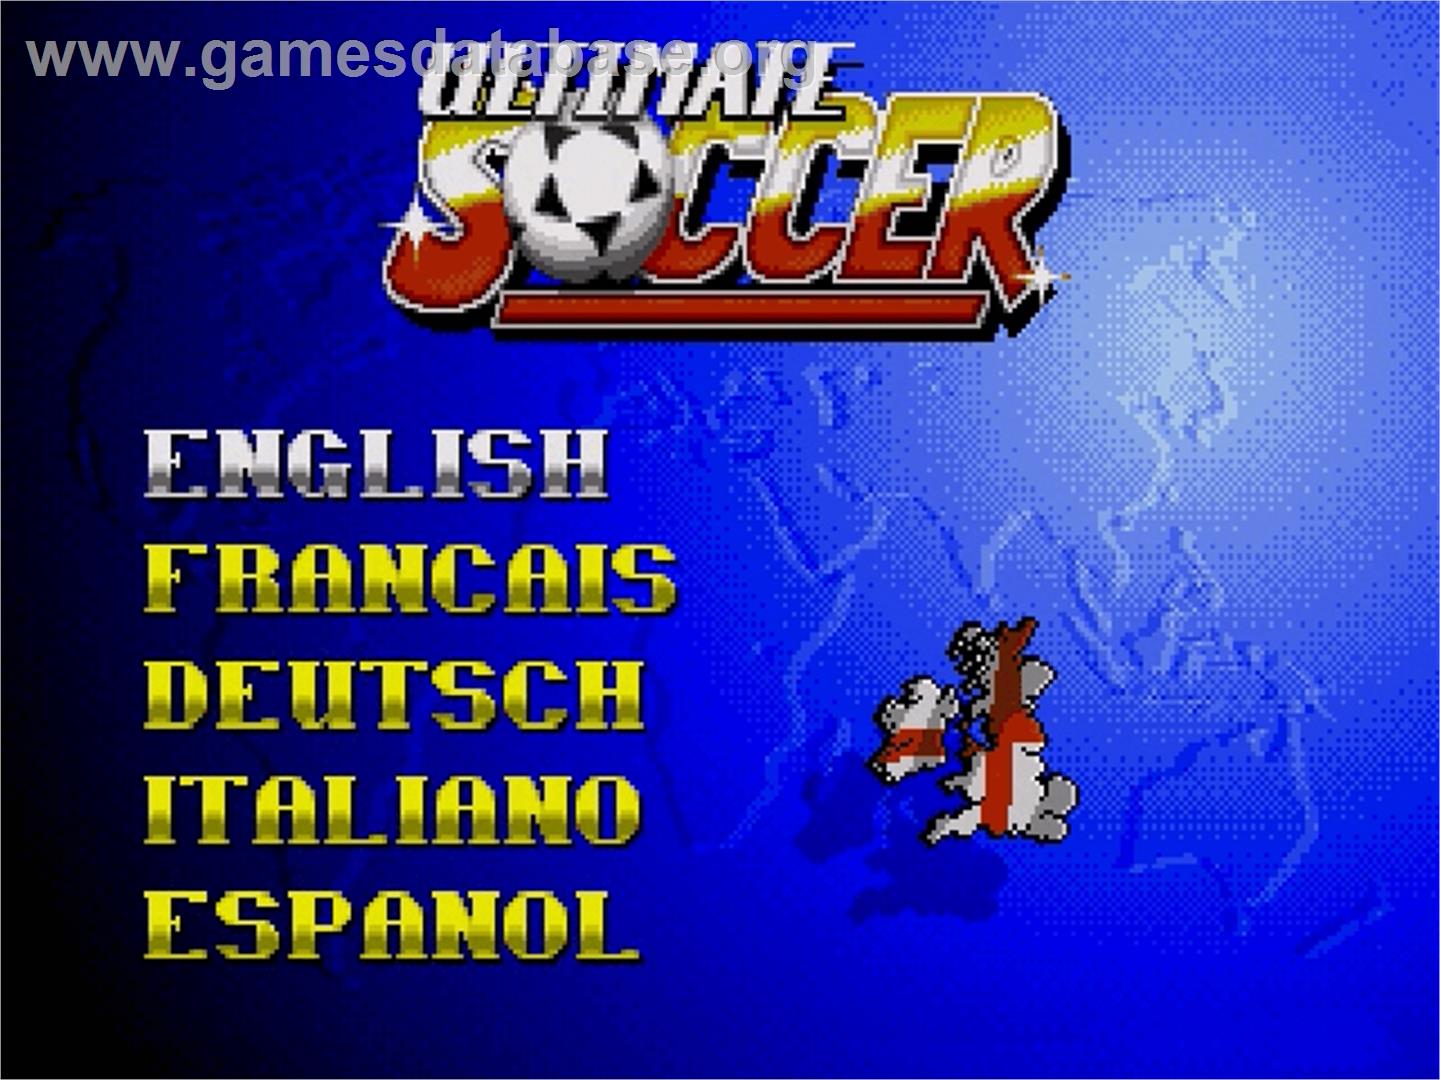 Ultimate Soccer - Sega Genesis - Artwork - Title Screen